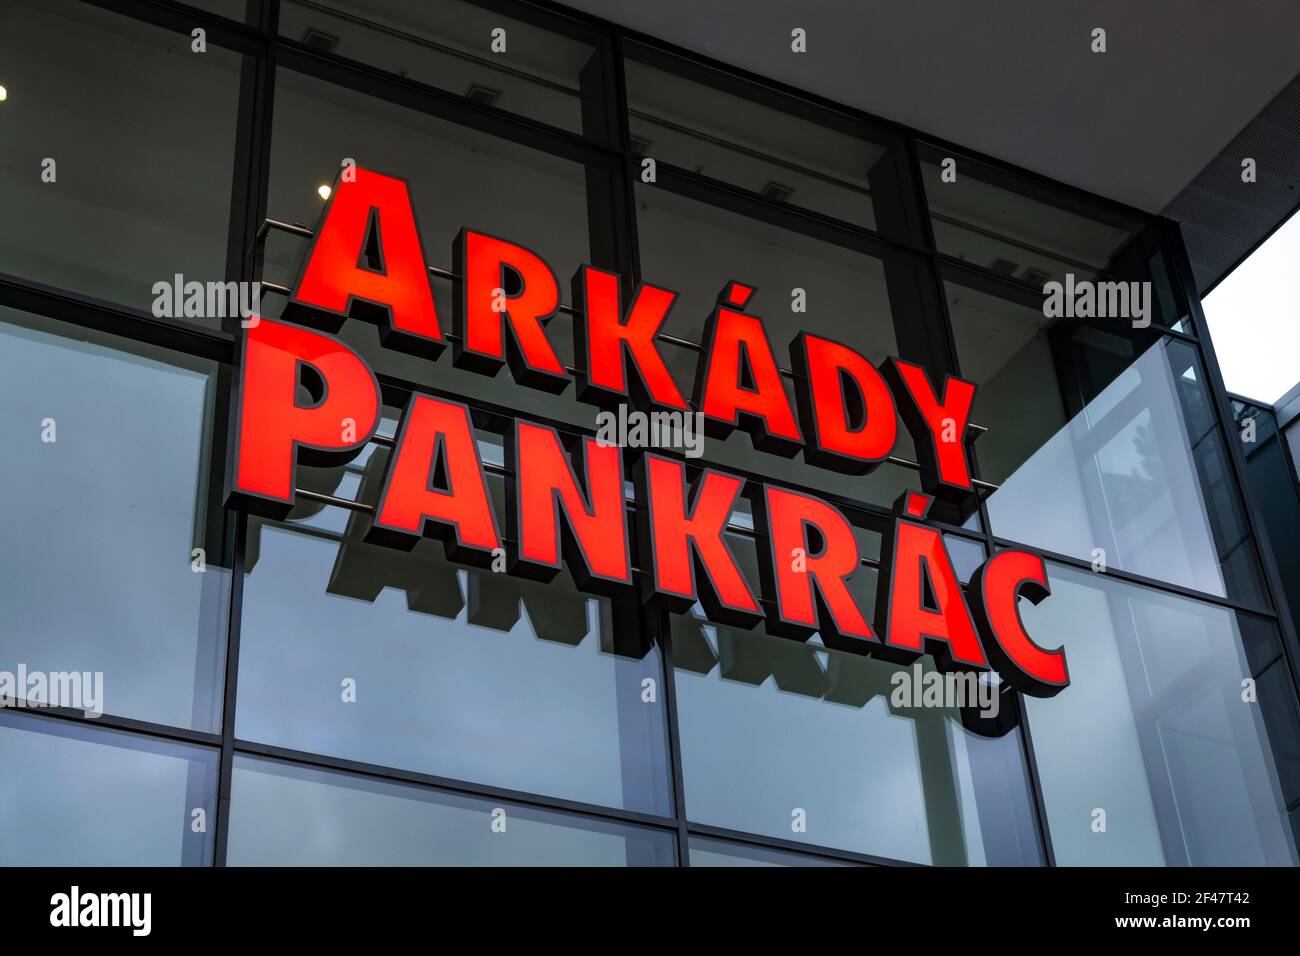 Praga, Repubblica Ceca - 9 gennaio 2021: Cartello Arkady Pankrac di fronte al parco al dettaglio, sopra la stazione della metropolitana Pankrac Foto Stock